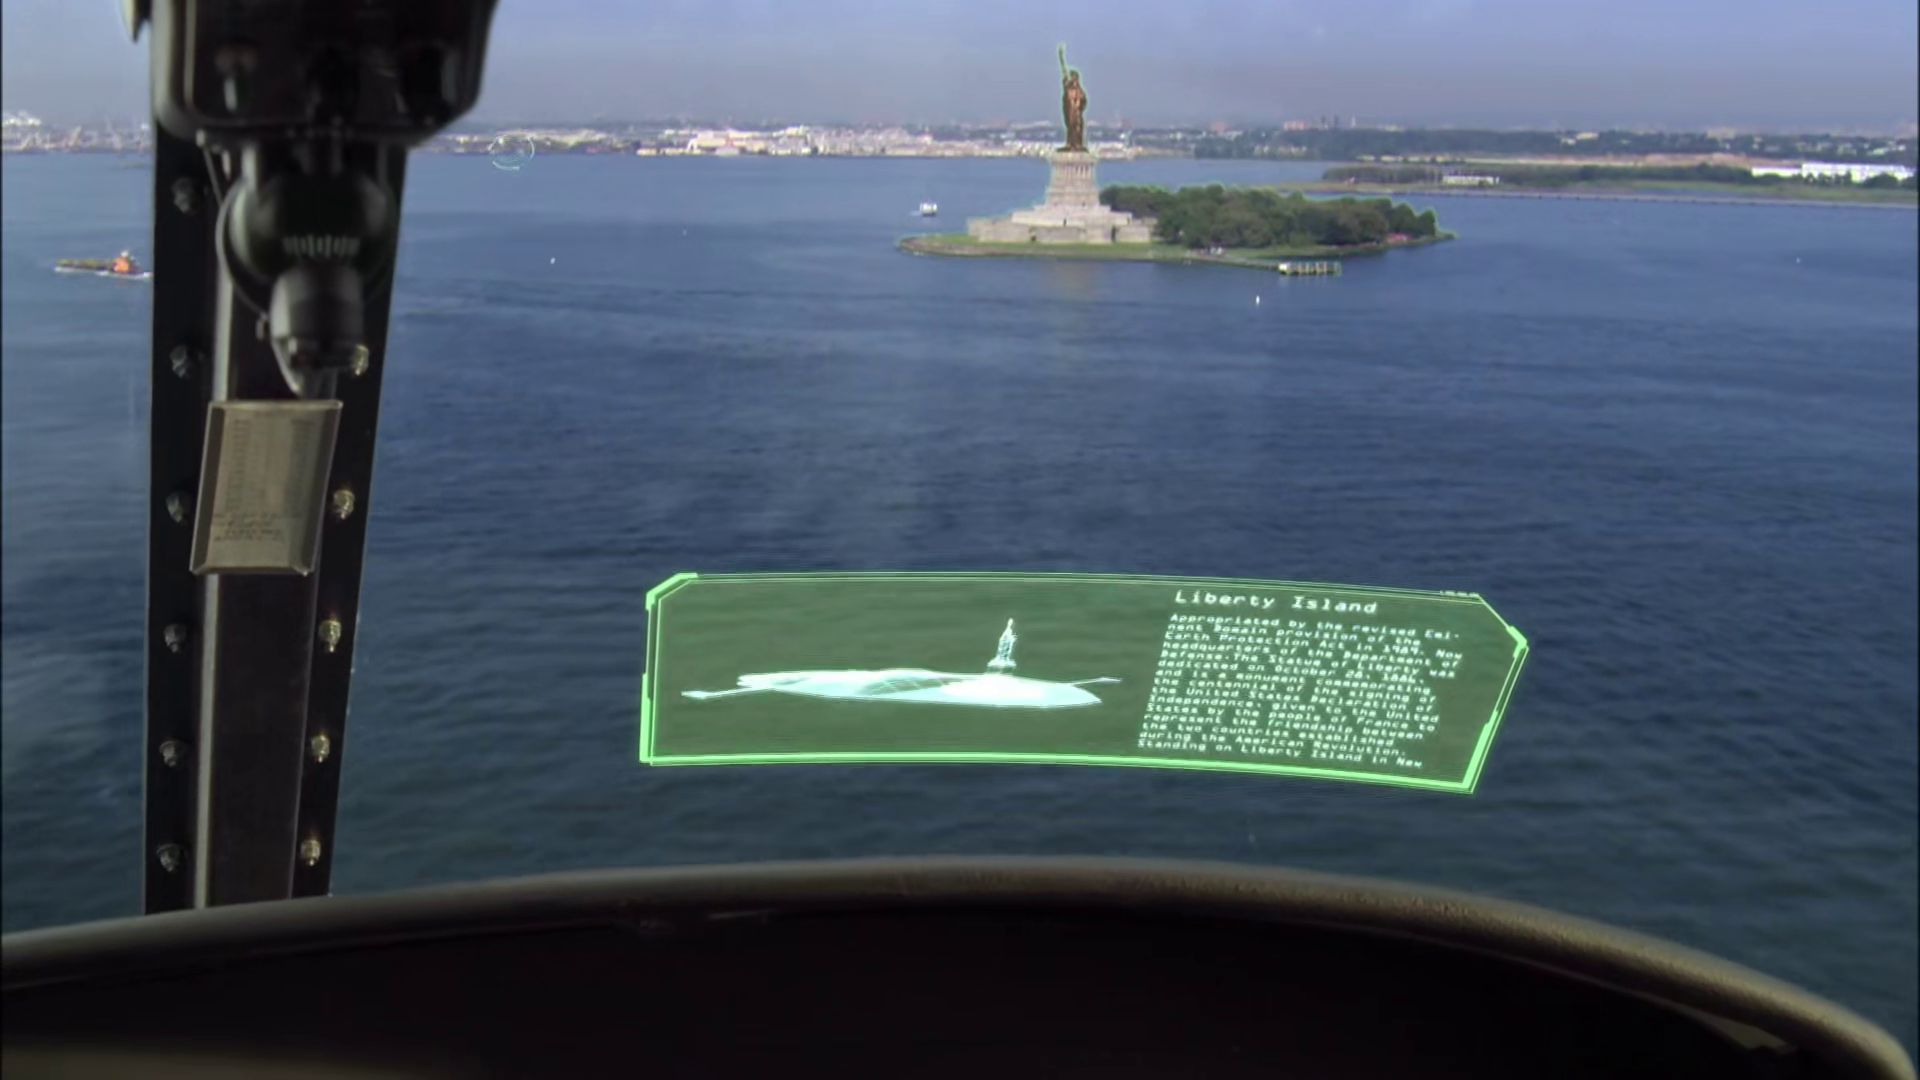 Redverse: <b>Image 3:</b> Liberty Island